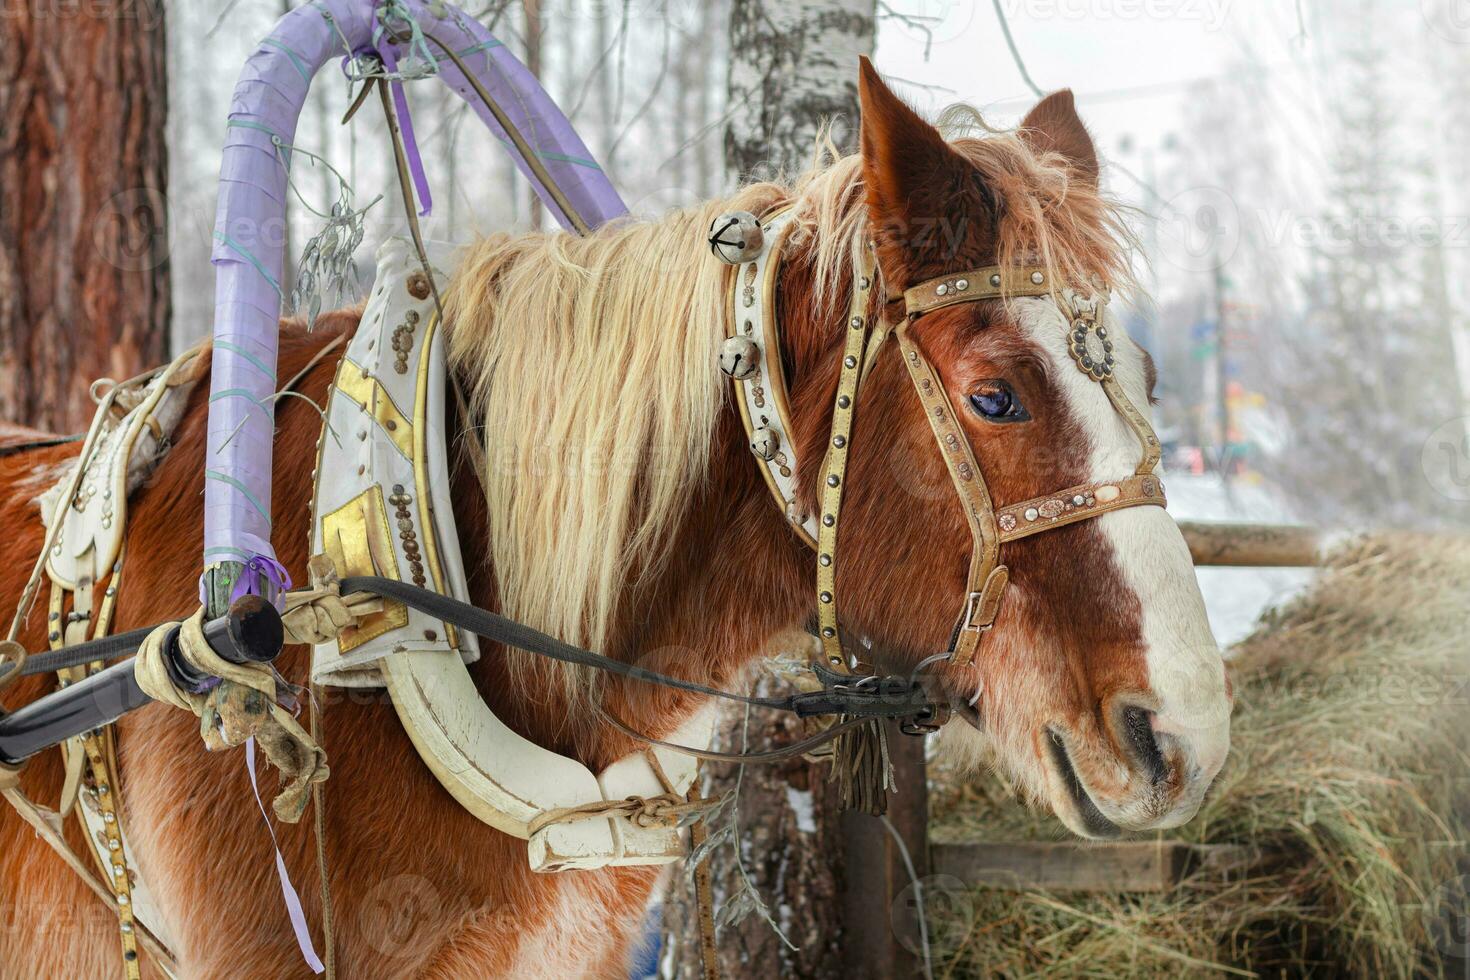 Winter horse in harness eat hay, frosty, winter landscape photo